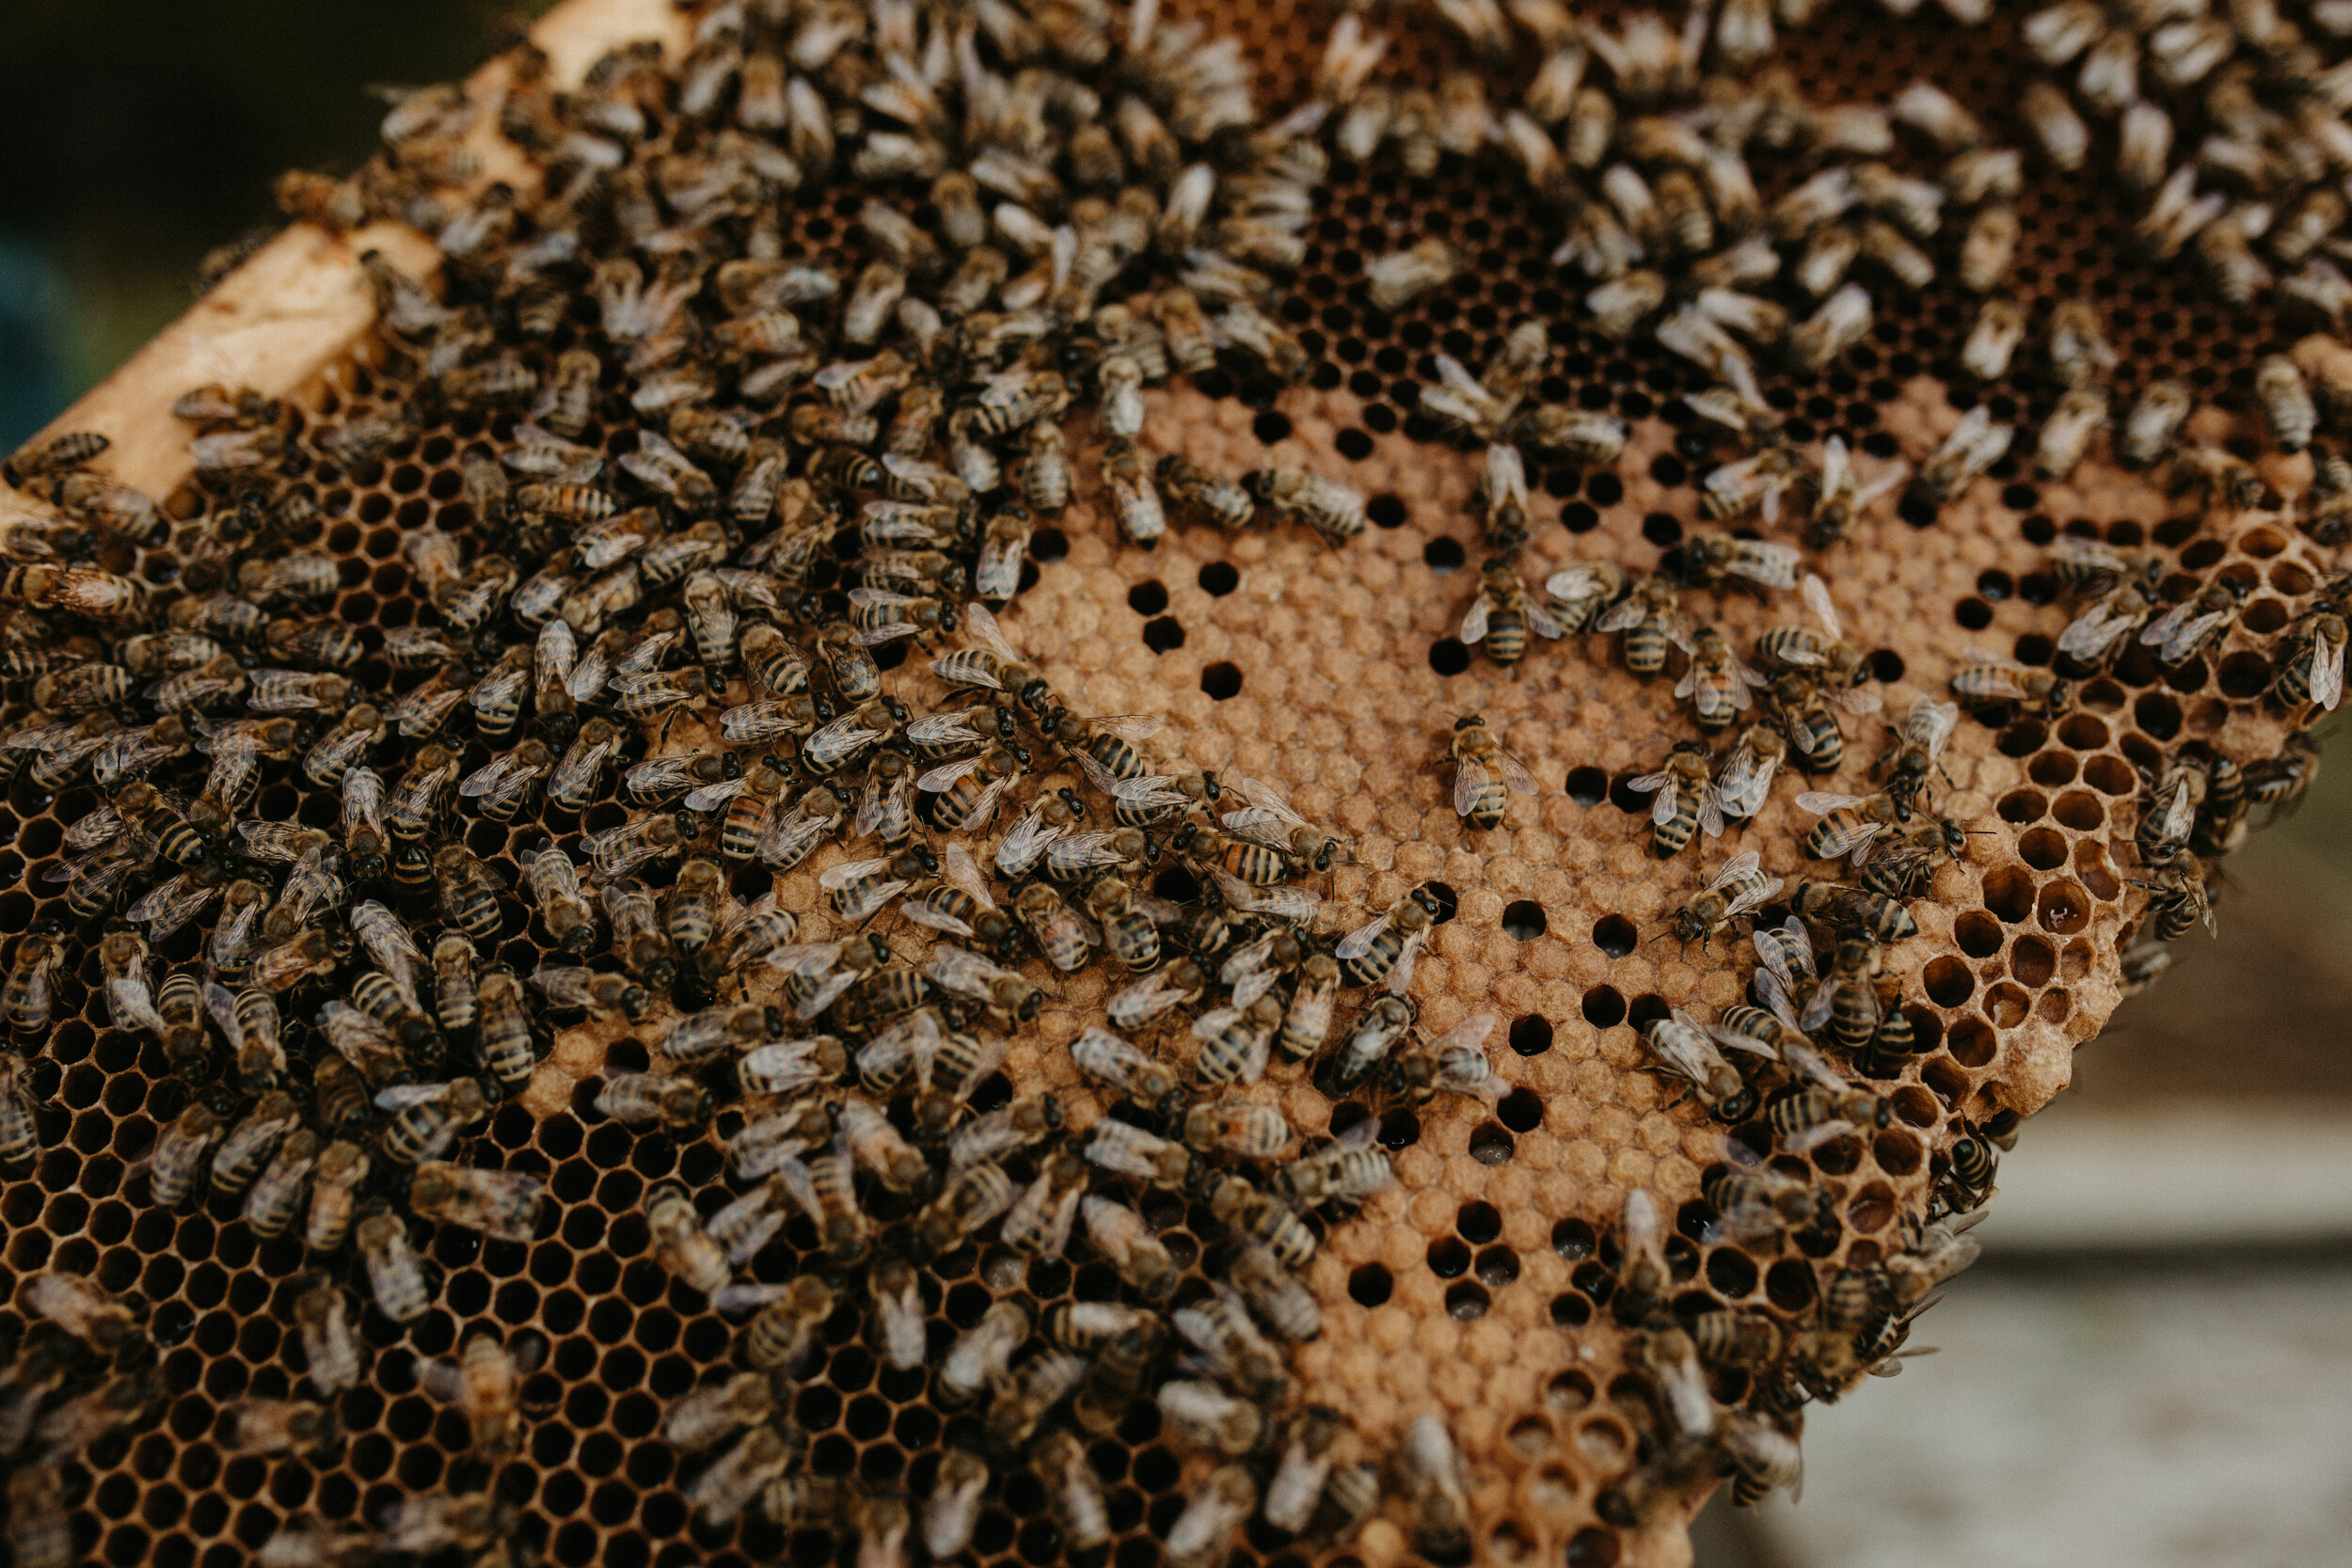 bees015.jpg